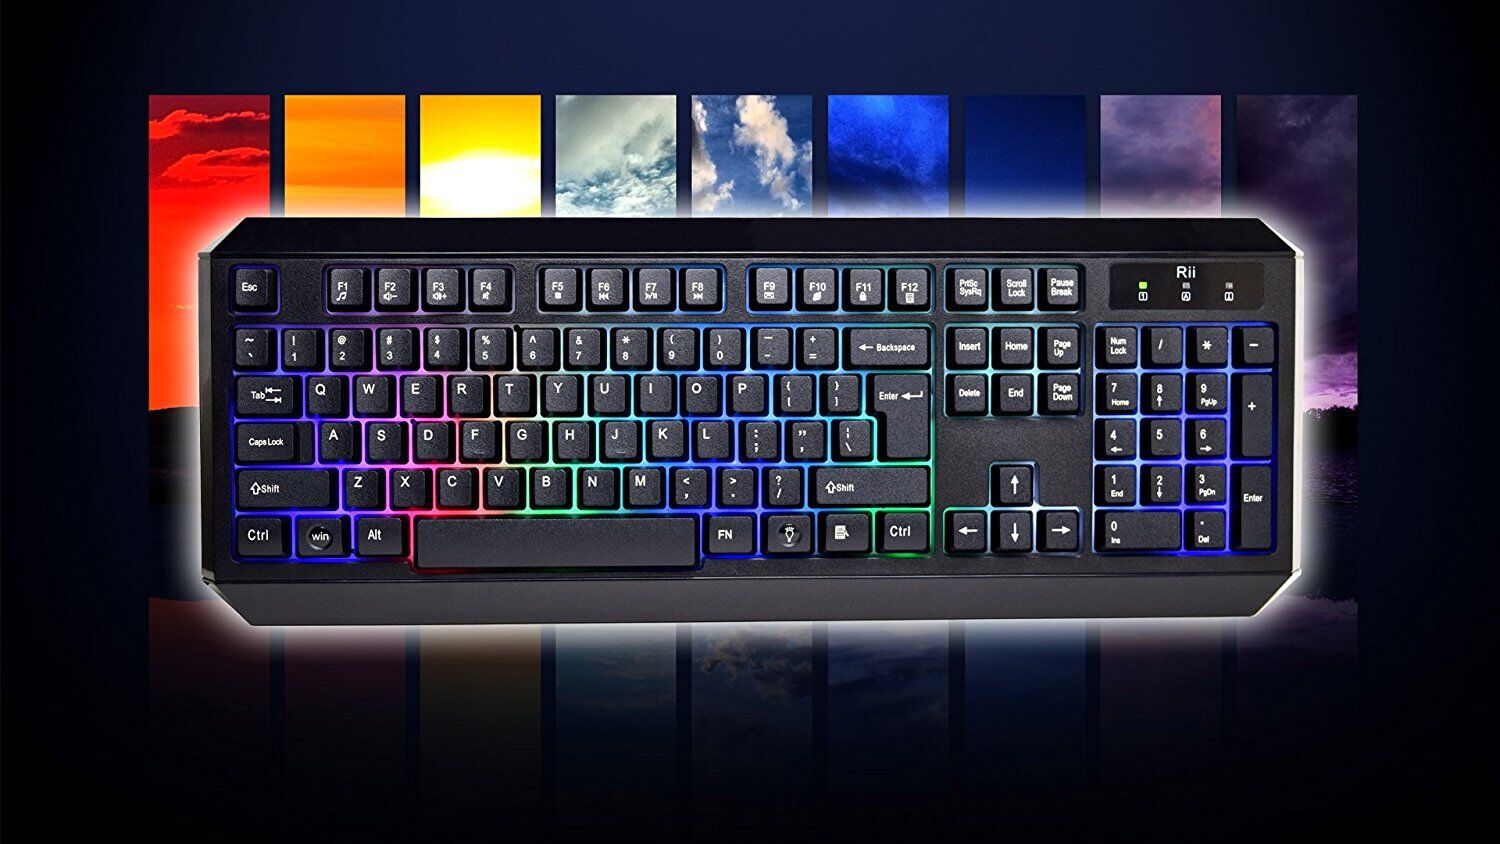 Genuine Rii RK300 Multimedia Gaming Keyboard w/ 7 Adjustable LED Color Backlit